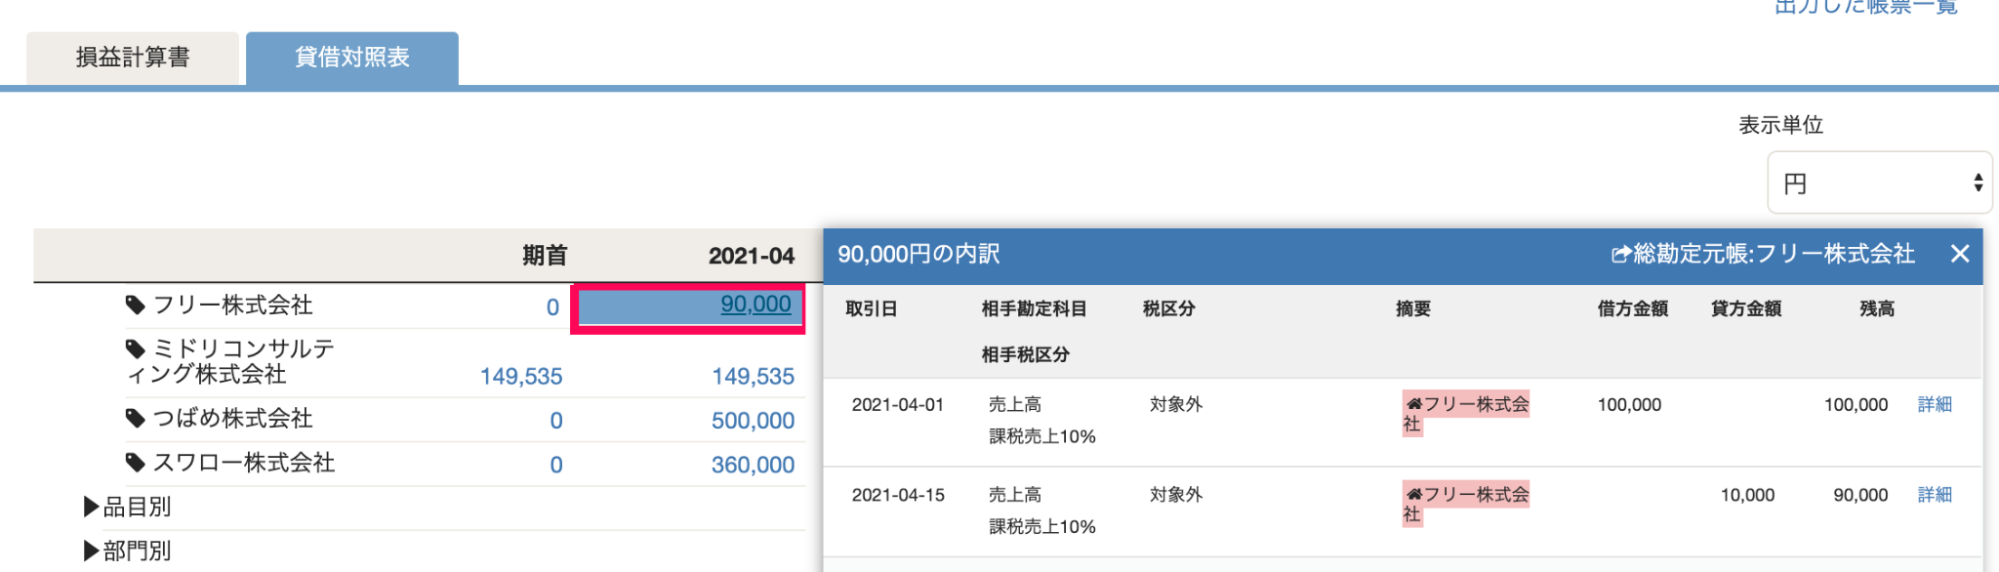 「月次推移」レポート画面で「2021年4月」の「売掛金」が「90,000」円と表示されており、その内訳には「100,000」円の売上高と、「-10,000」円の値引高が含まれていることを指し示したスクリーンショット